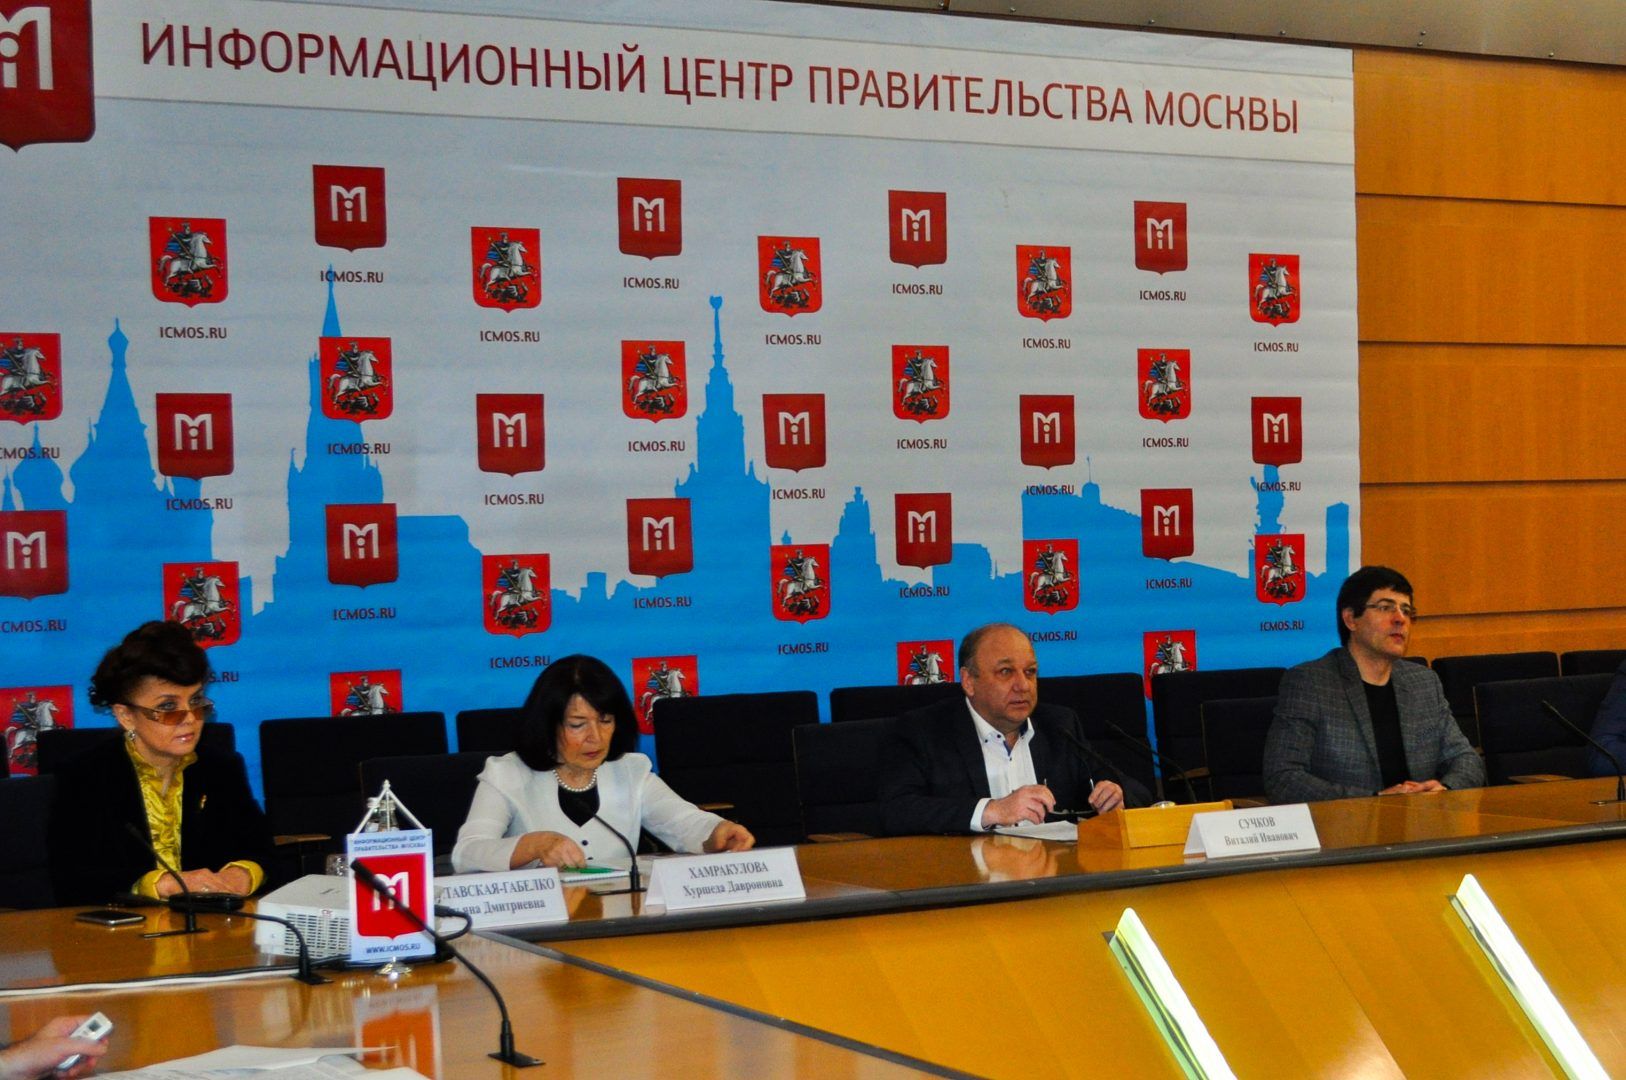 Особенности празднования Навруза в 2019 году обсудили на пресс-конференции в Москве. Фото: Никита Нестеров